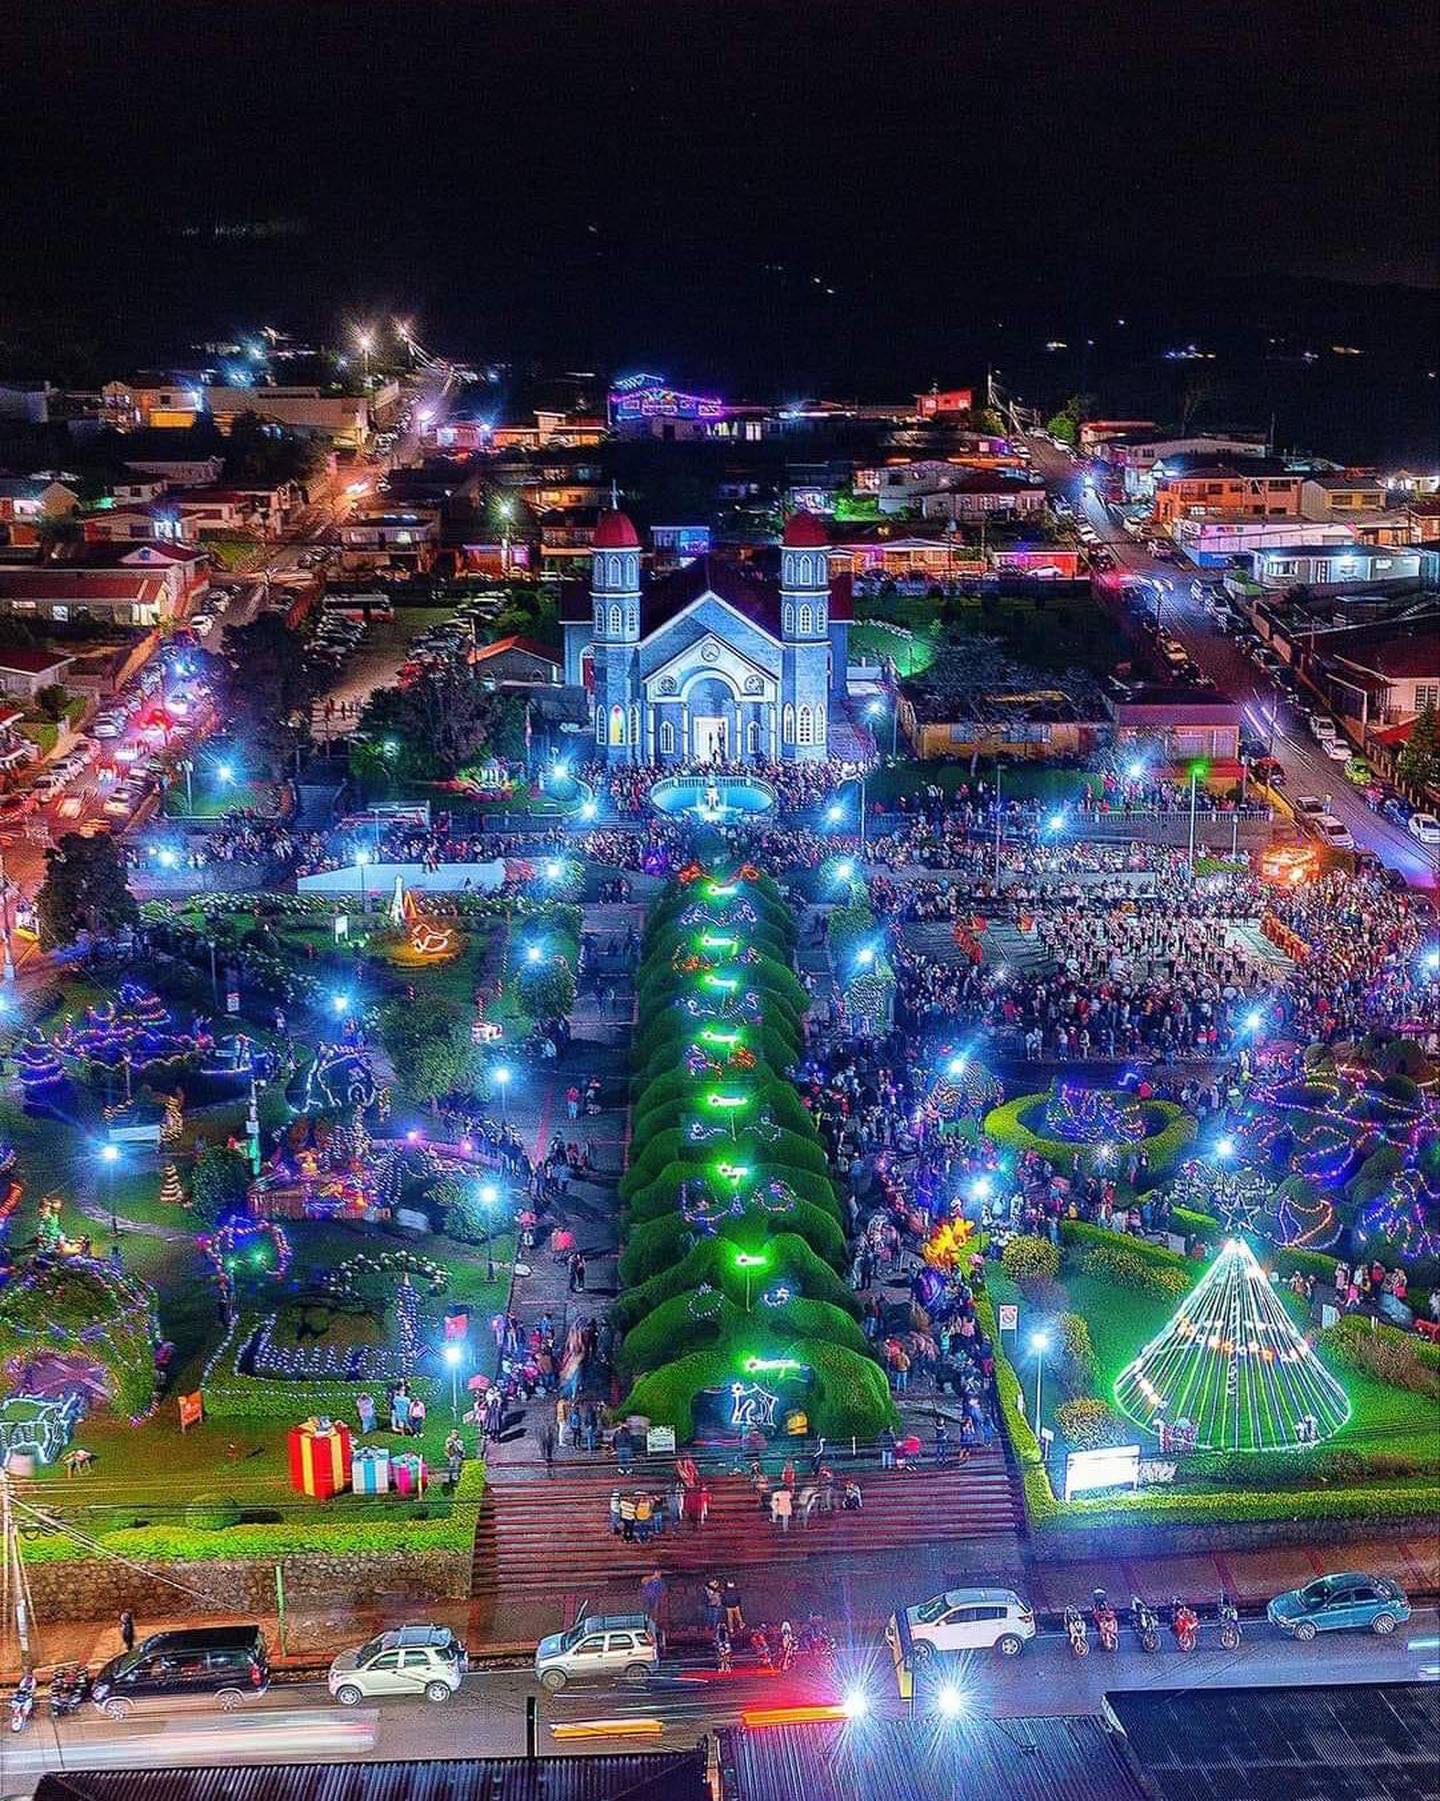 El pasado sábado 4 de diciembre, a las siete de la noche, se encendió la iluminación navideña del parque de Zarcero